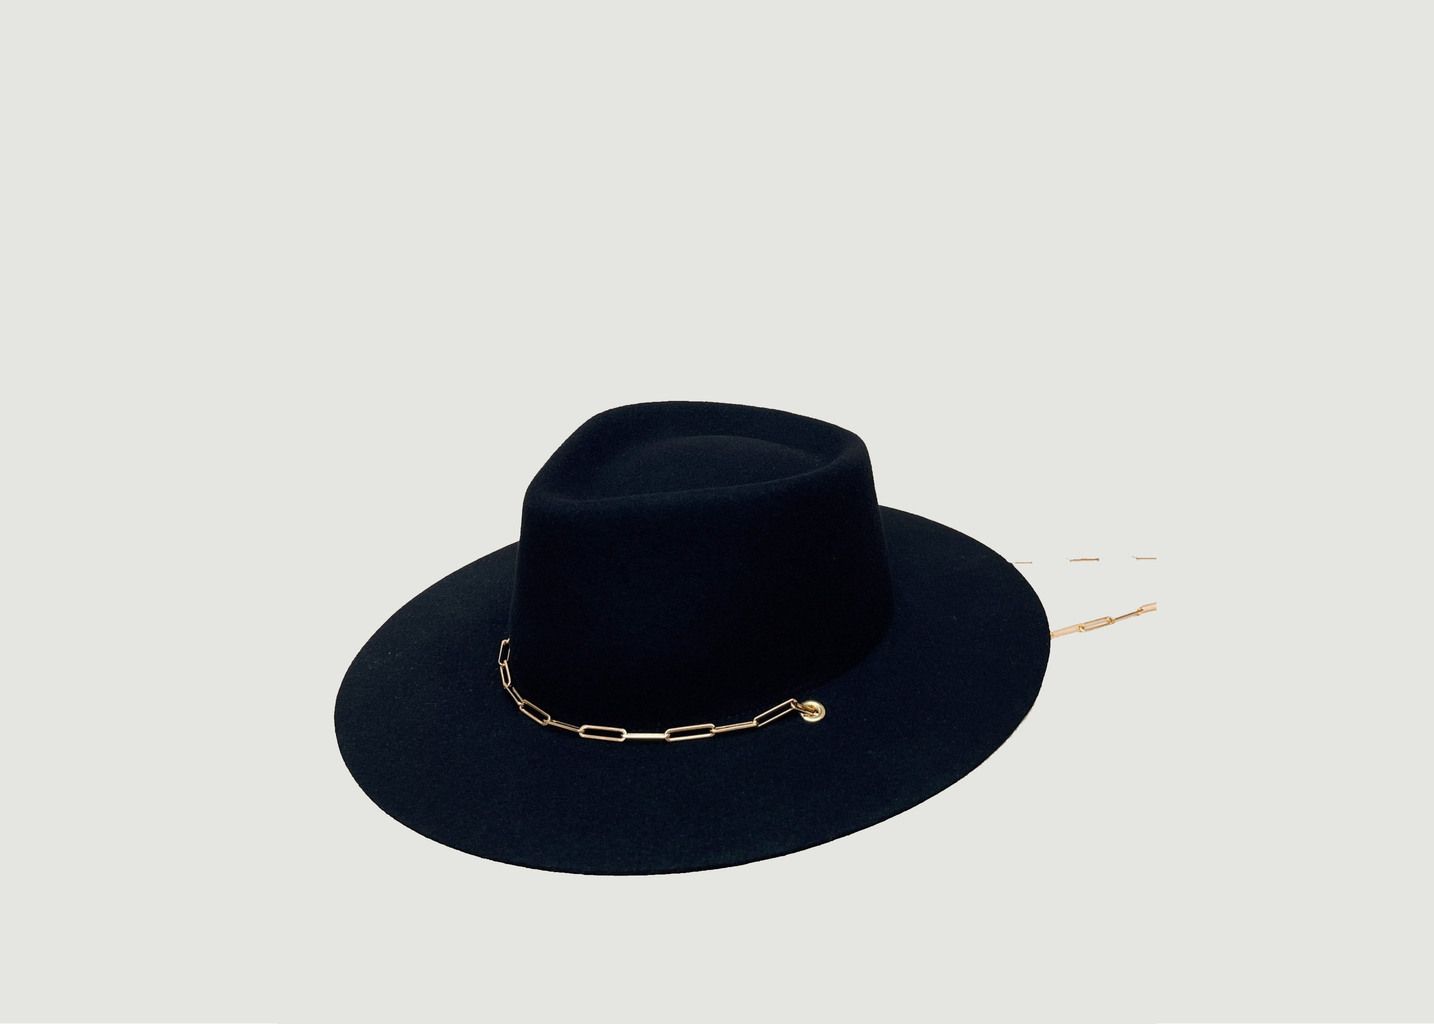 Ulysses hat in wool felt - Van Palma